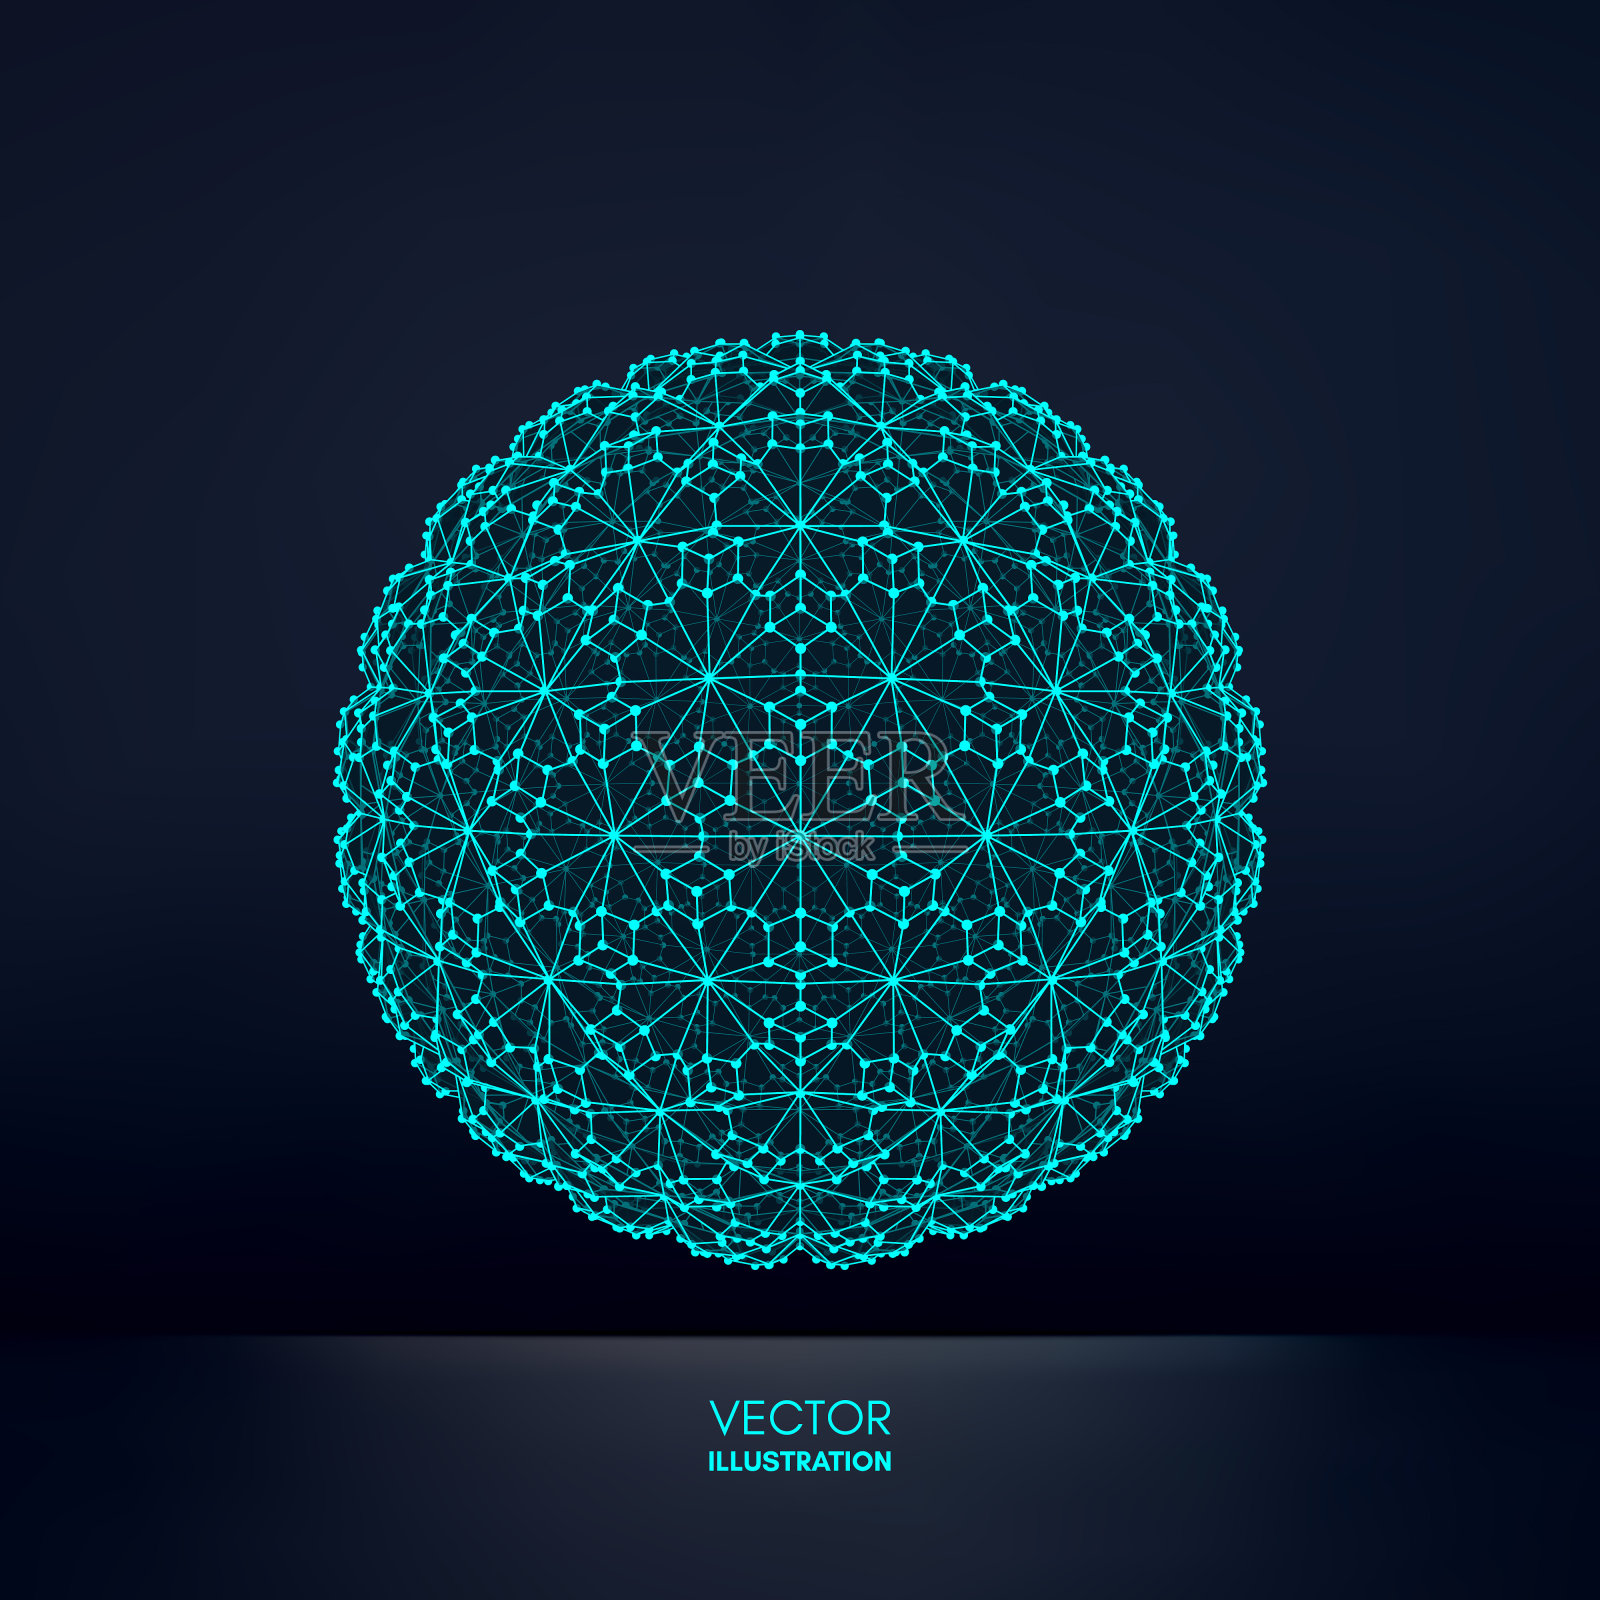 有连接线的球体。全球数字连接。线框图说明。抽象三维网格设计。技术风格。插画图片素材